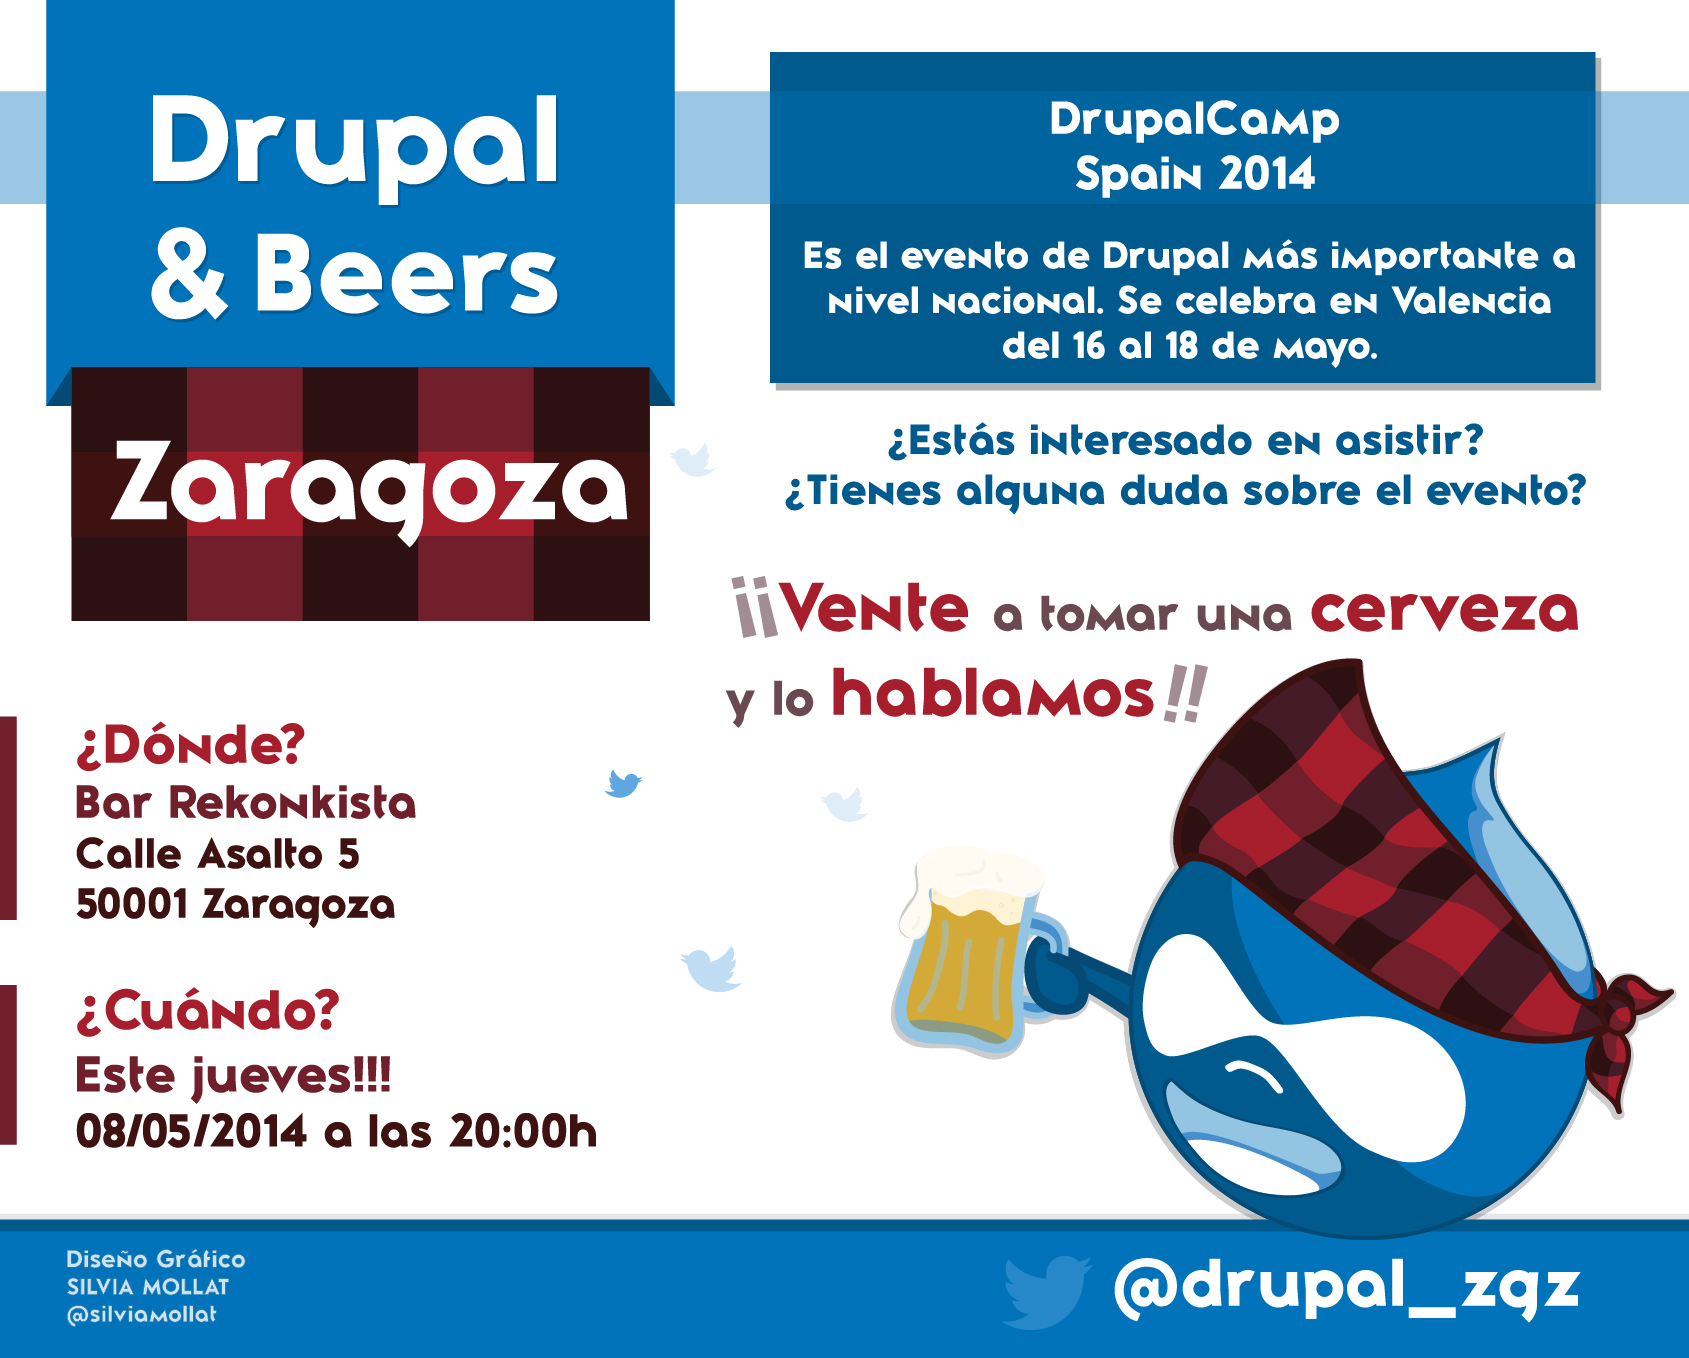 Drupal & Beers